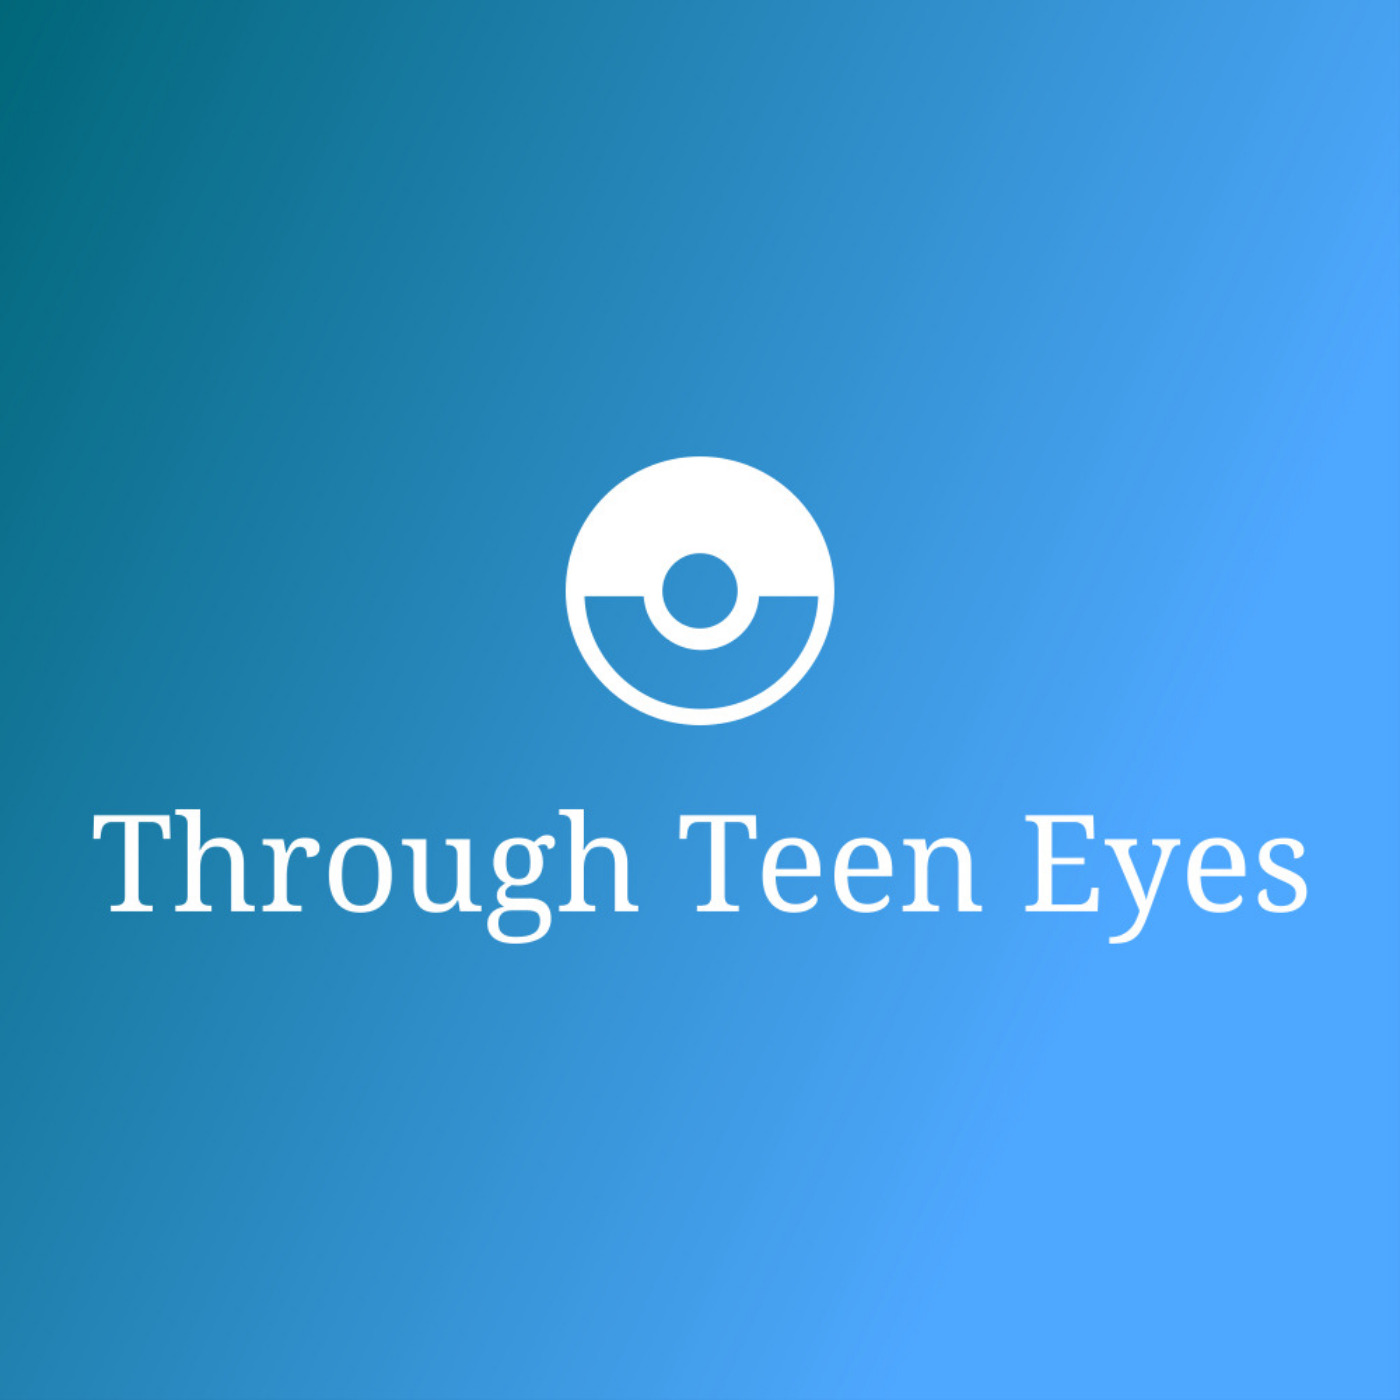 Through Teen Eyes